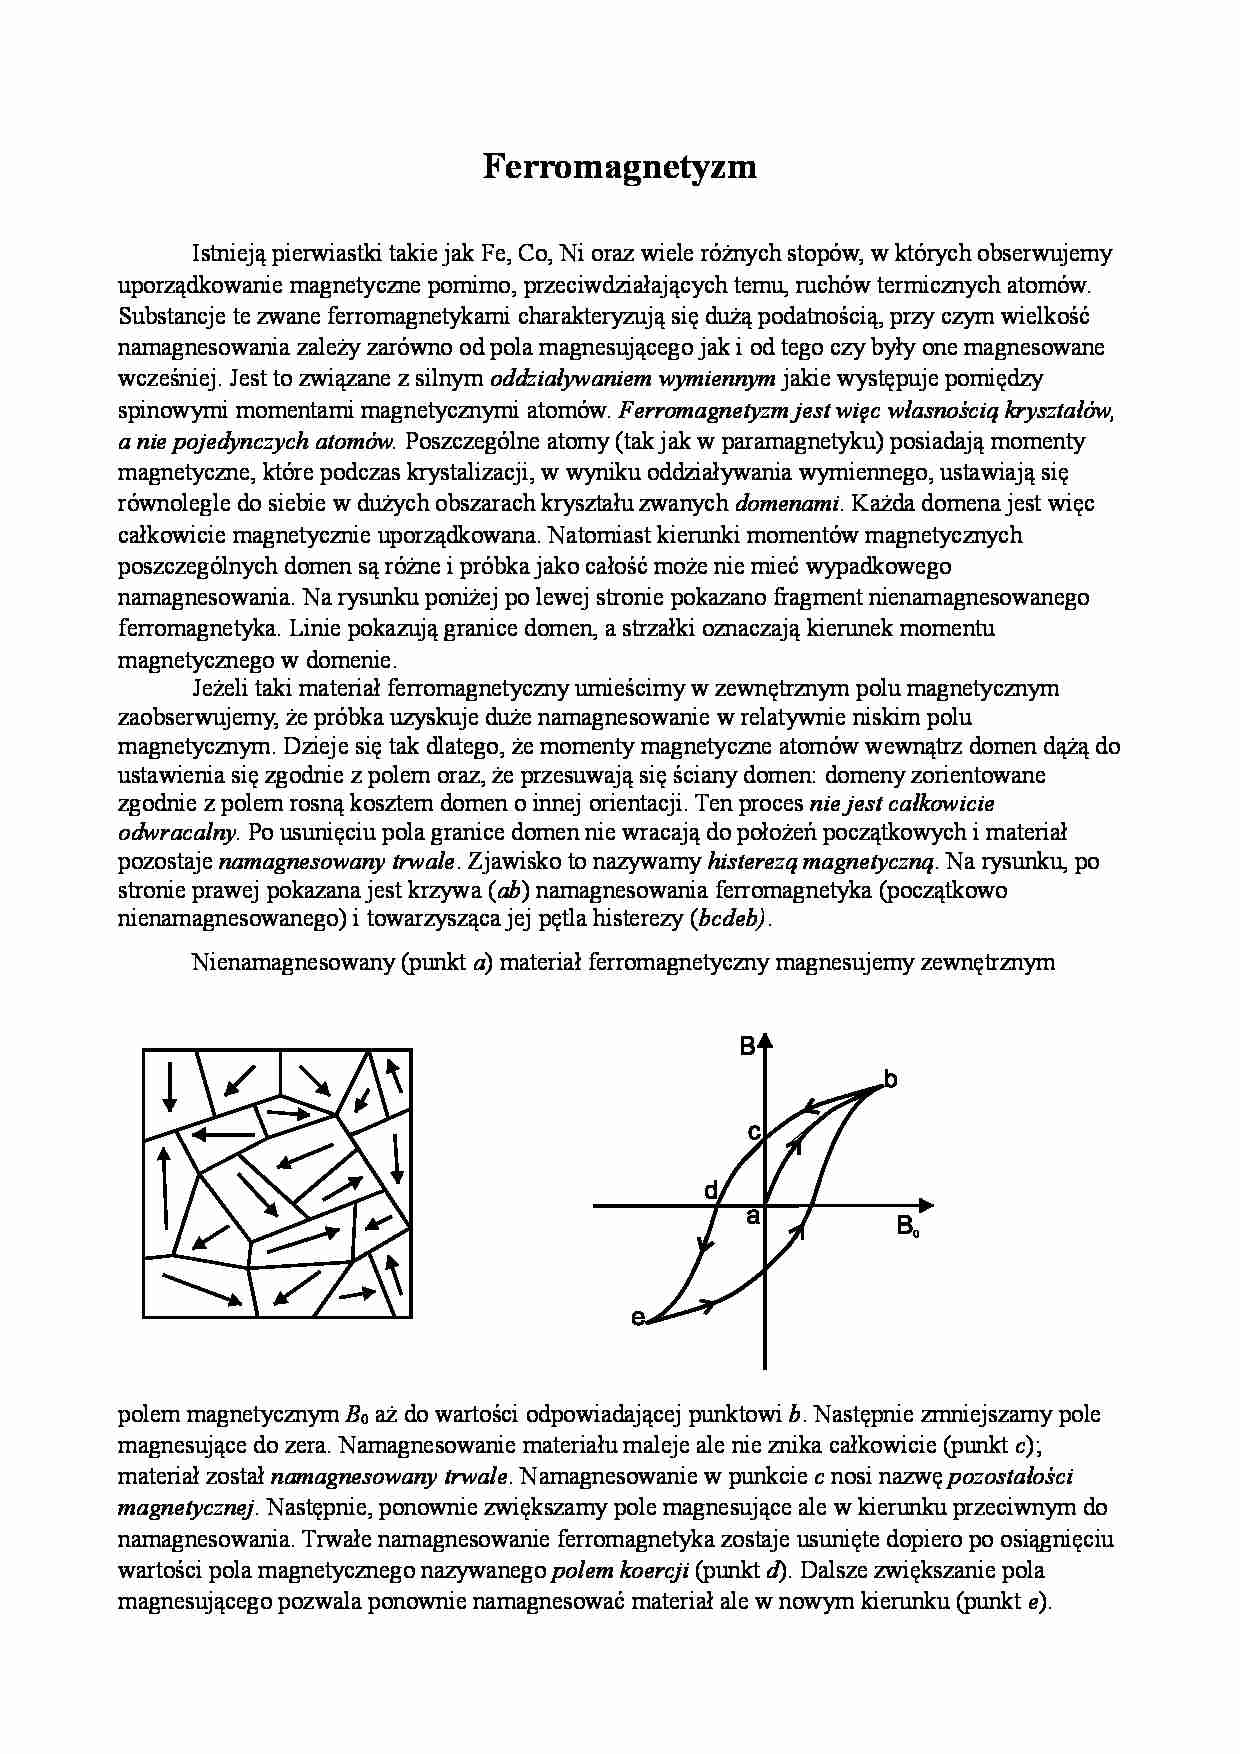 Ferromagnetyzm w fizyce - strona 1